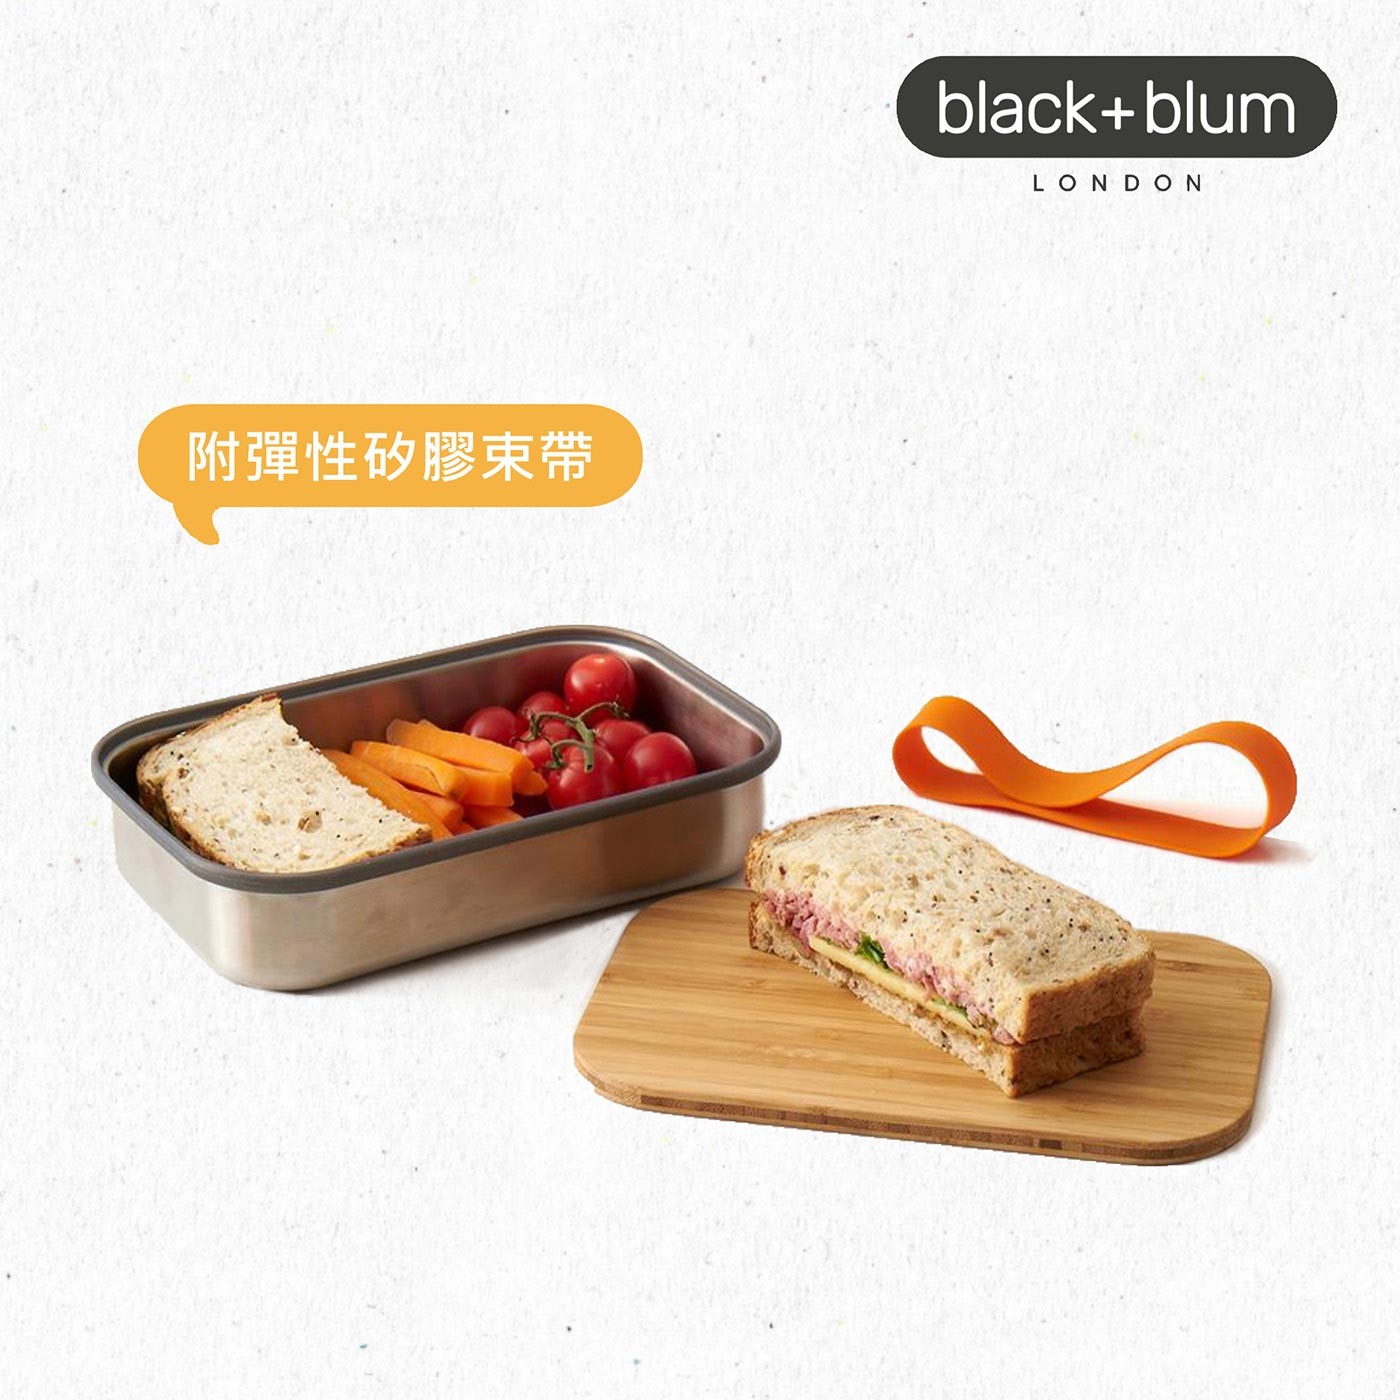 英國black+blum不鏽鋼輕食盒900毫升-熱情橘，304不鏽鋼盒身、耐熱矽膠束帶邊條，高品質天然竹製上蓋，整體輕量化設計，針對土司三明治優化的盒身尺寸。